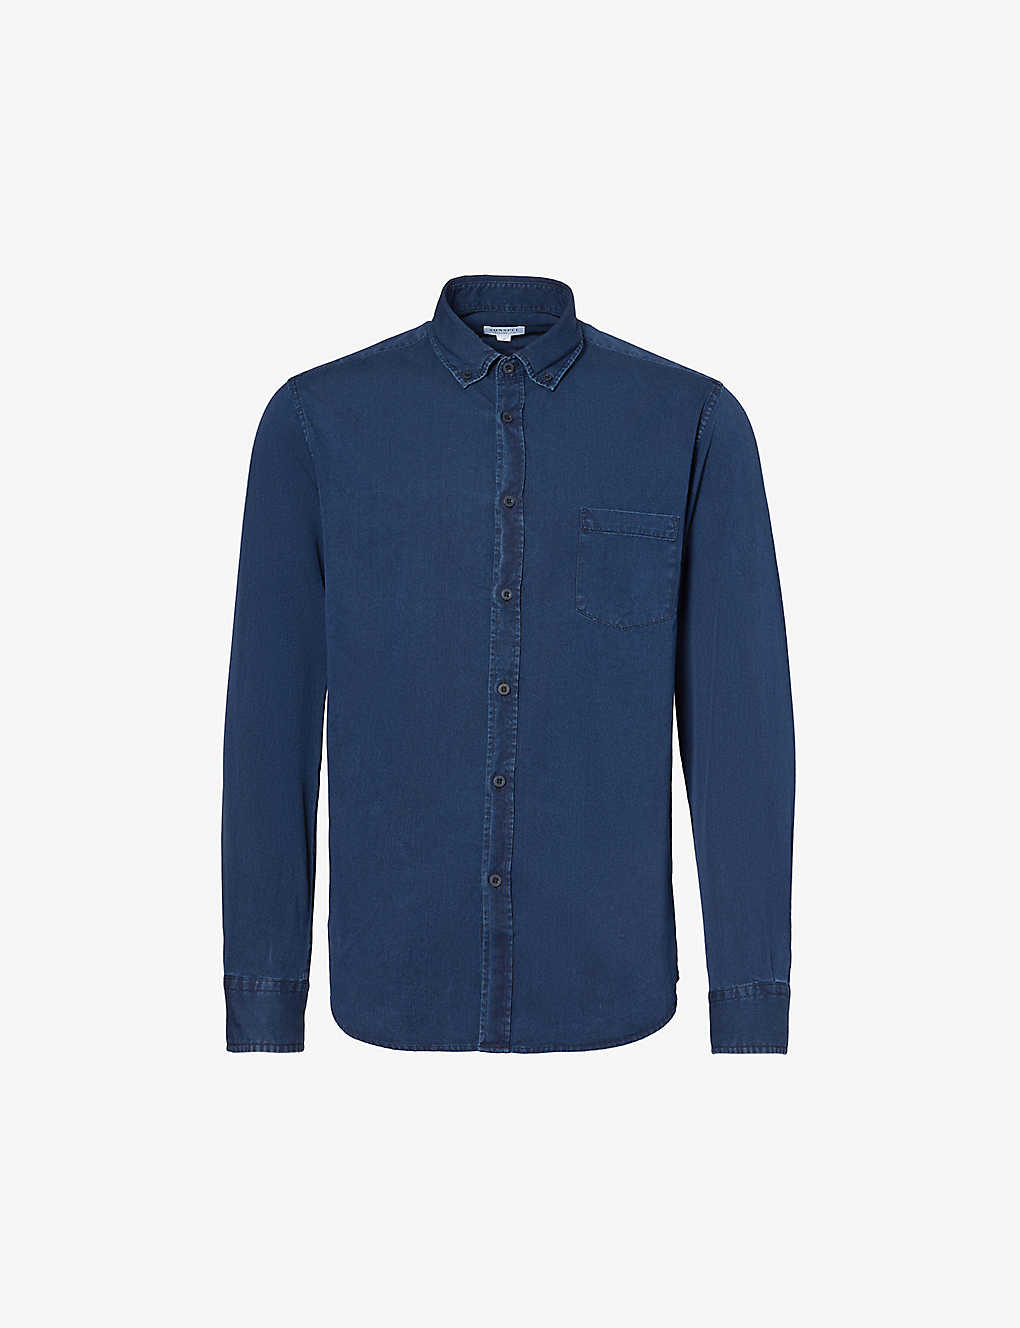 Shop Sunspel Men's Indigo Regular-fit Button-down Collar Cotton Shirt